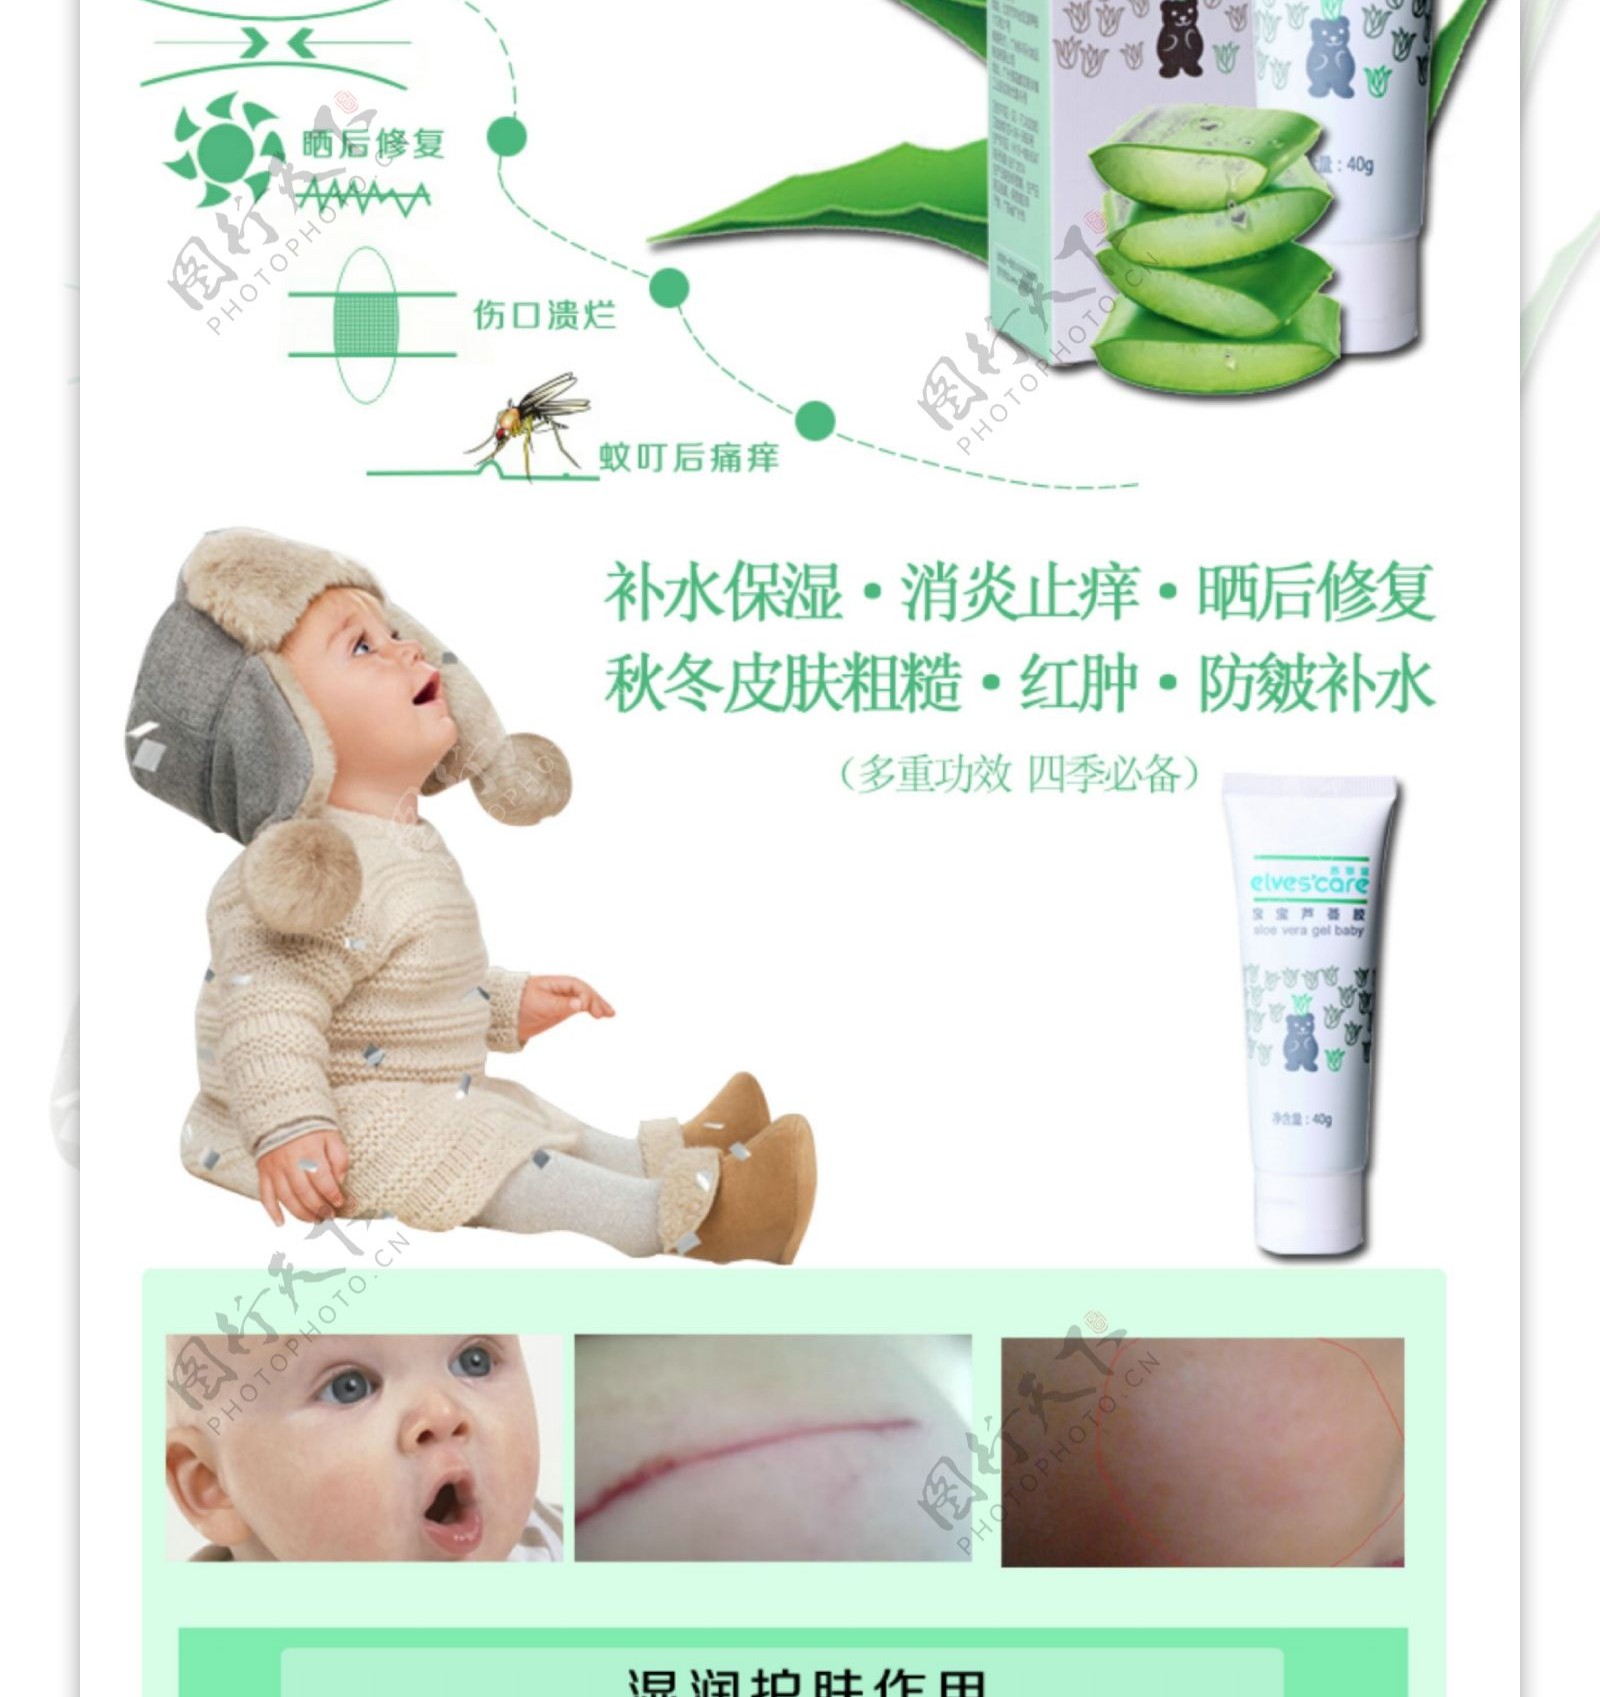 宝宝护理系列产品详情页关爱宝宝健康